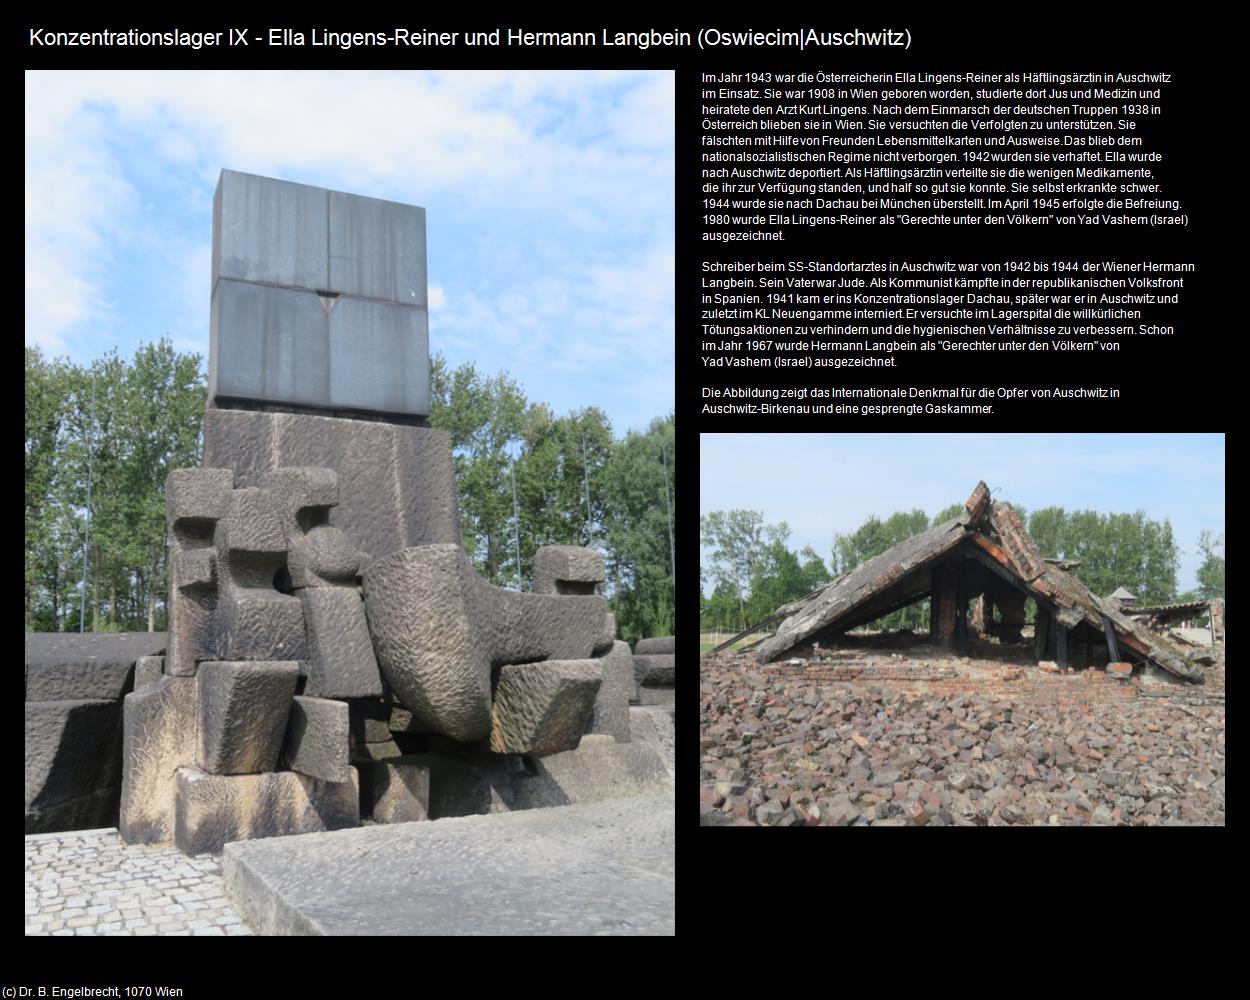 Konzentrationslager IX - Ella Lingens-Reiner (Oswiecim|Auschwitz) in POLEN-Galizien